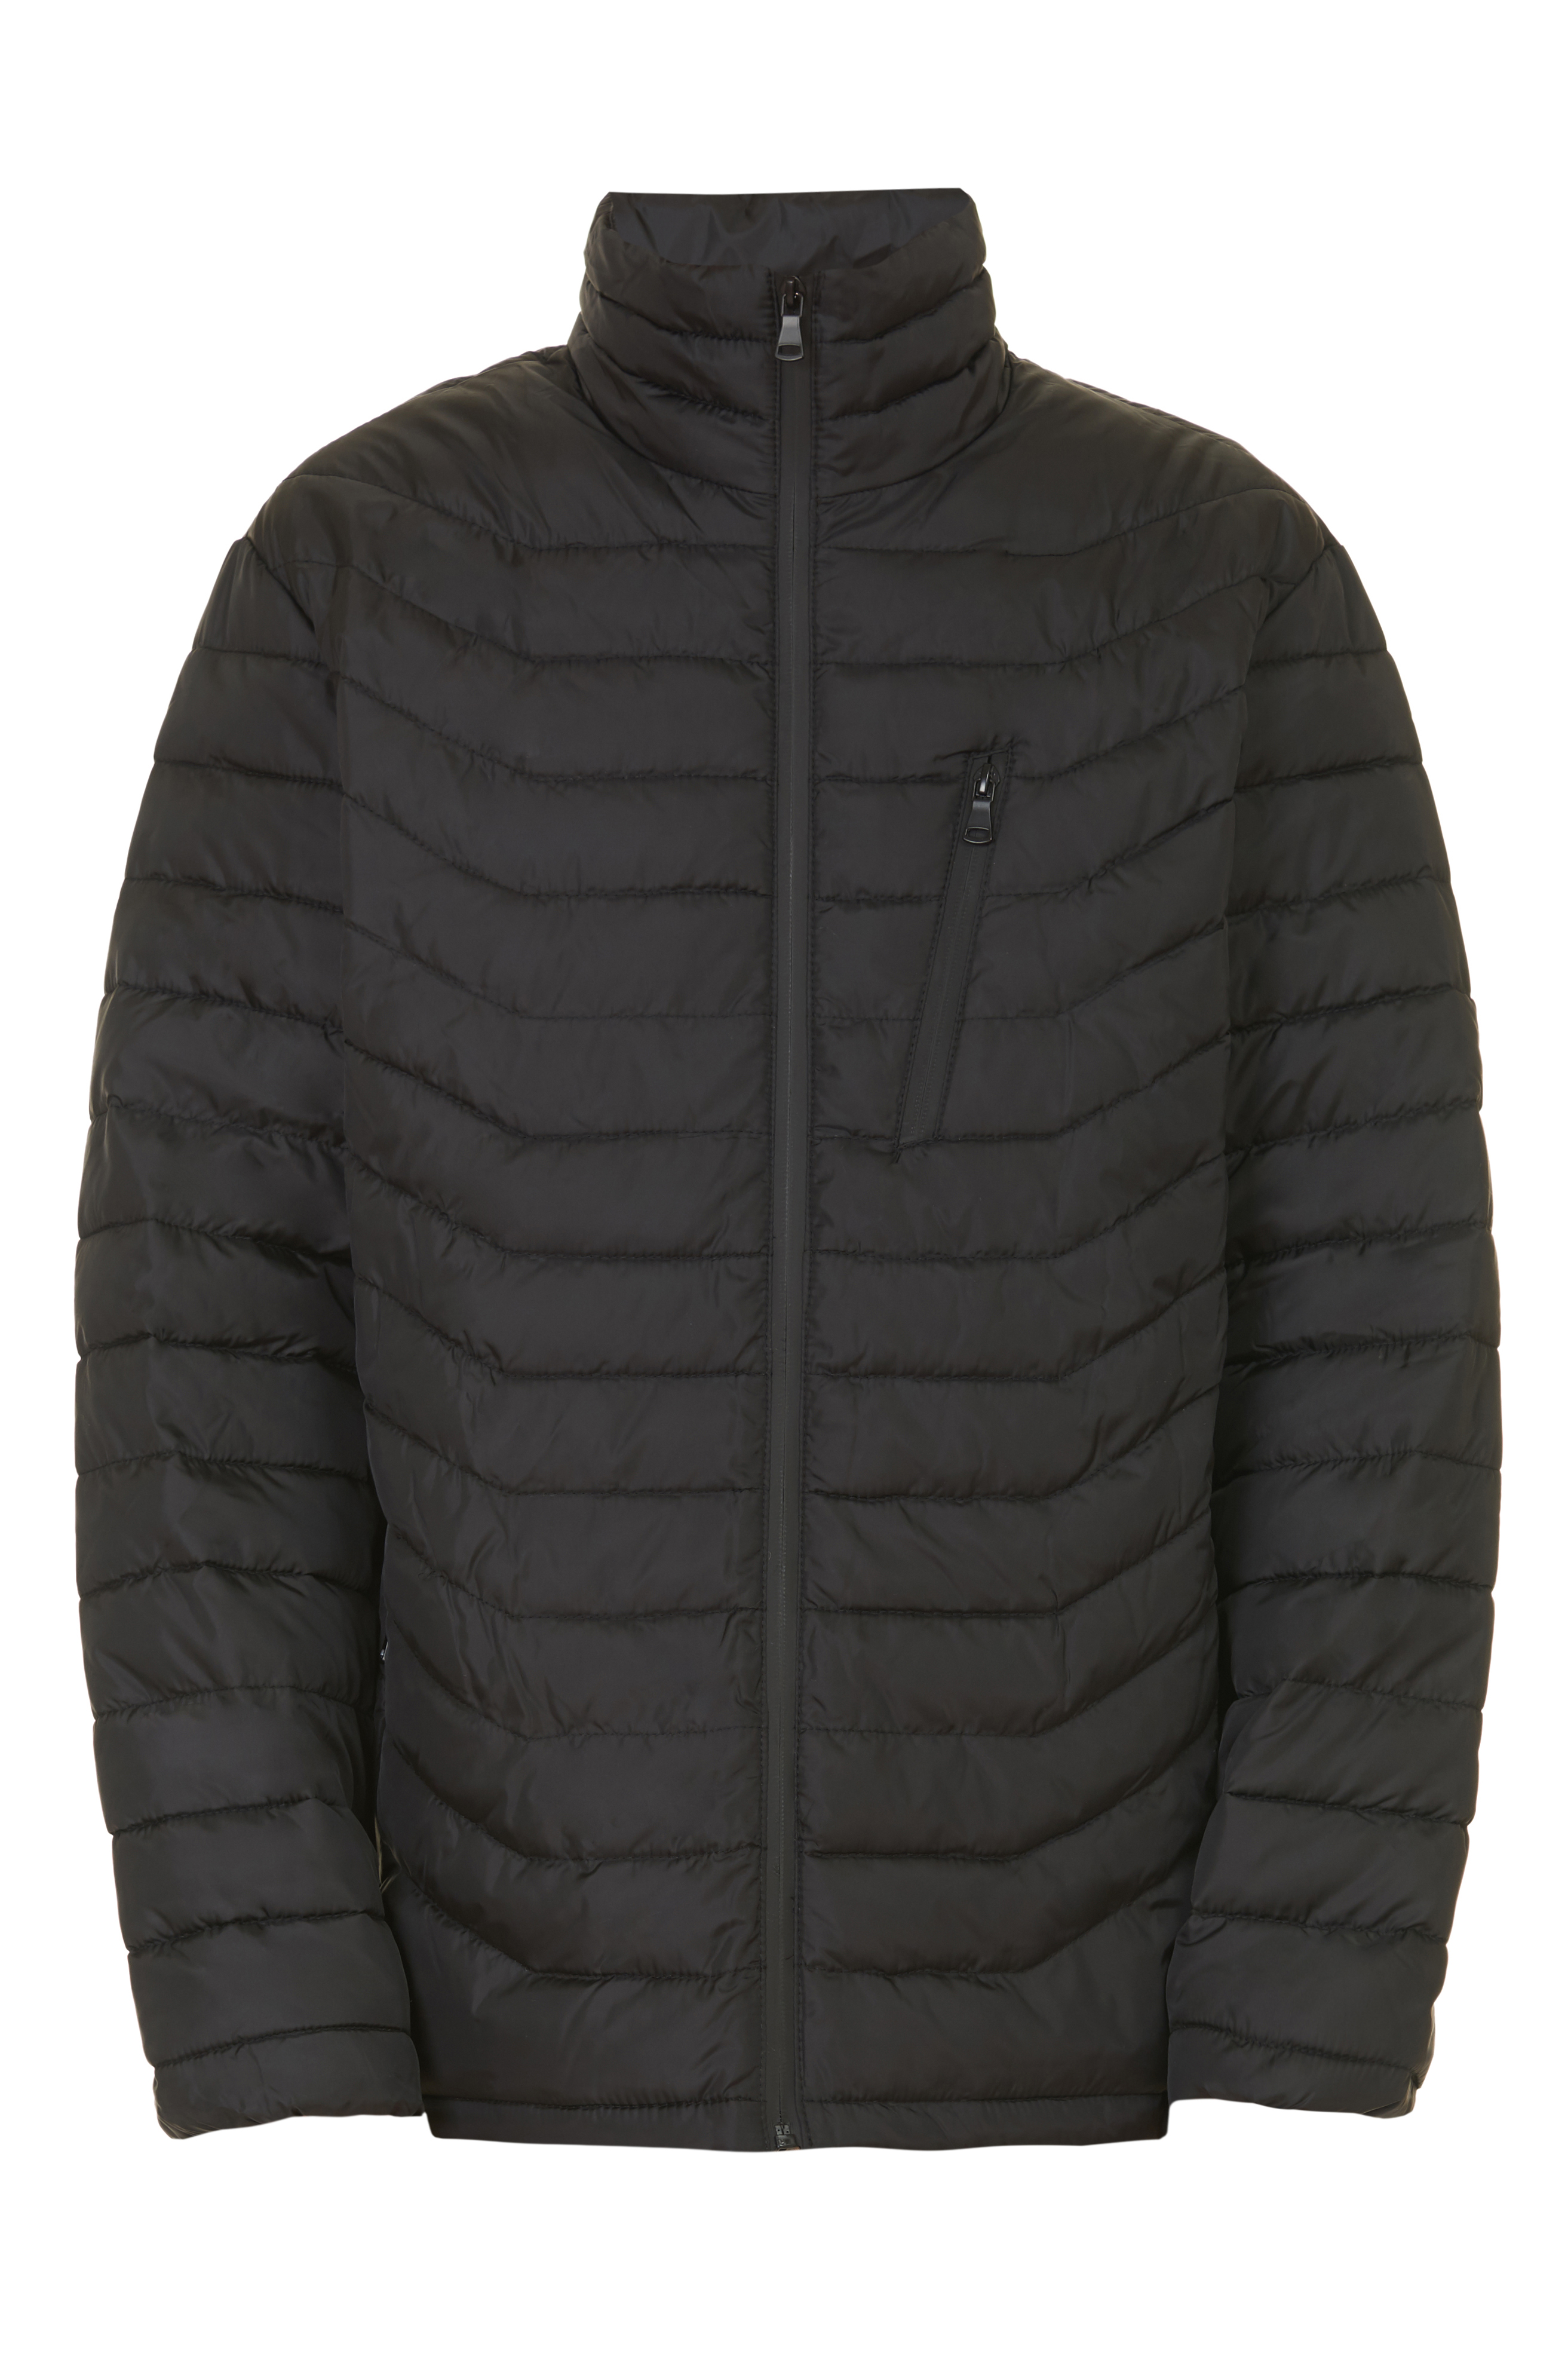 Куртка с непроницаемыми молниями (арт. baon B537547), размер L, цвет черный Куртка с непроницаемыми молниями (арт. baon B537547) - фото 3